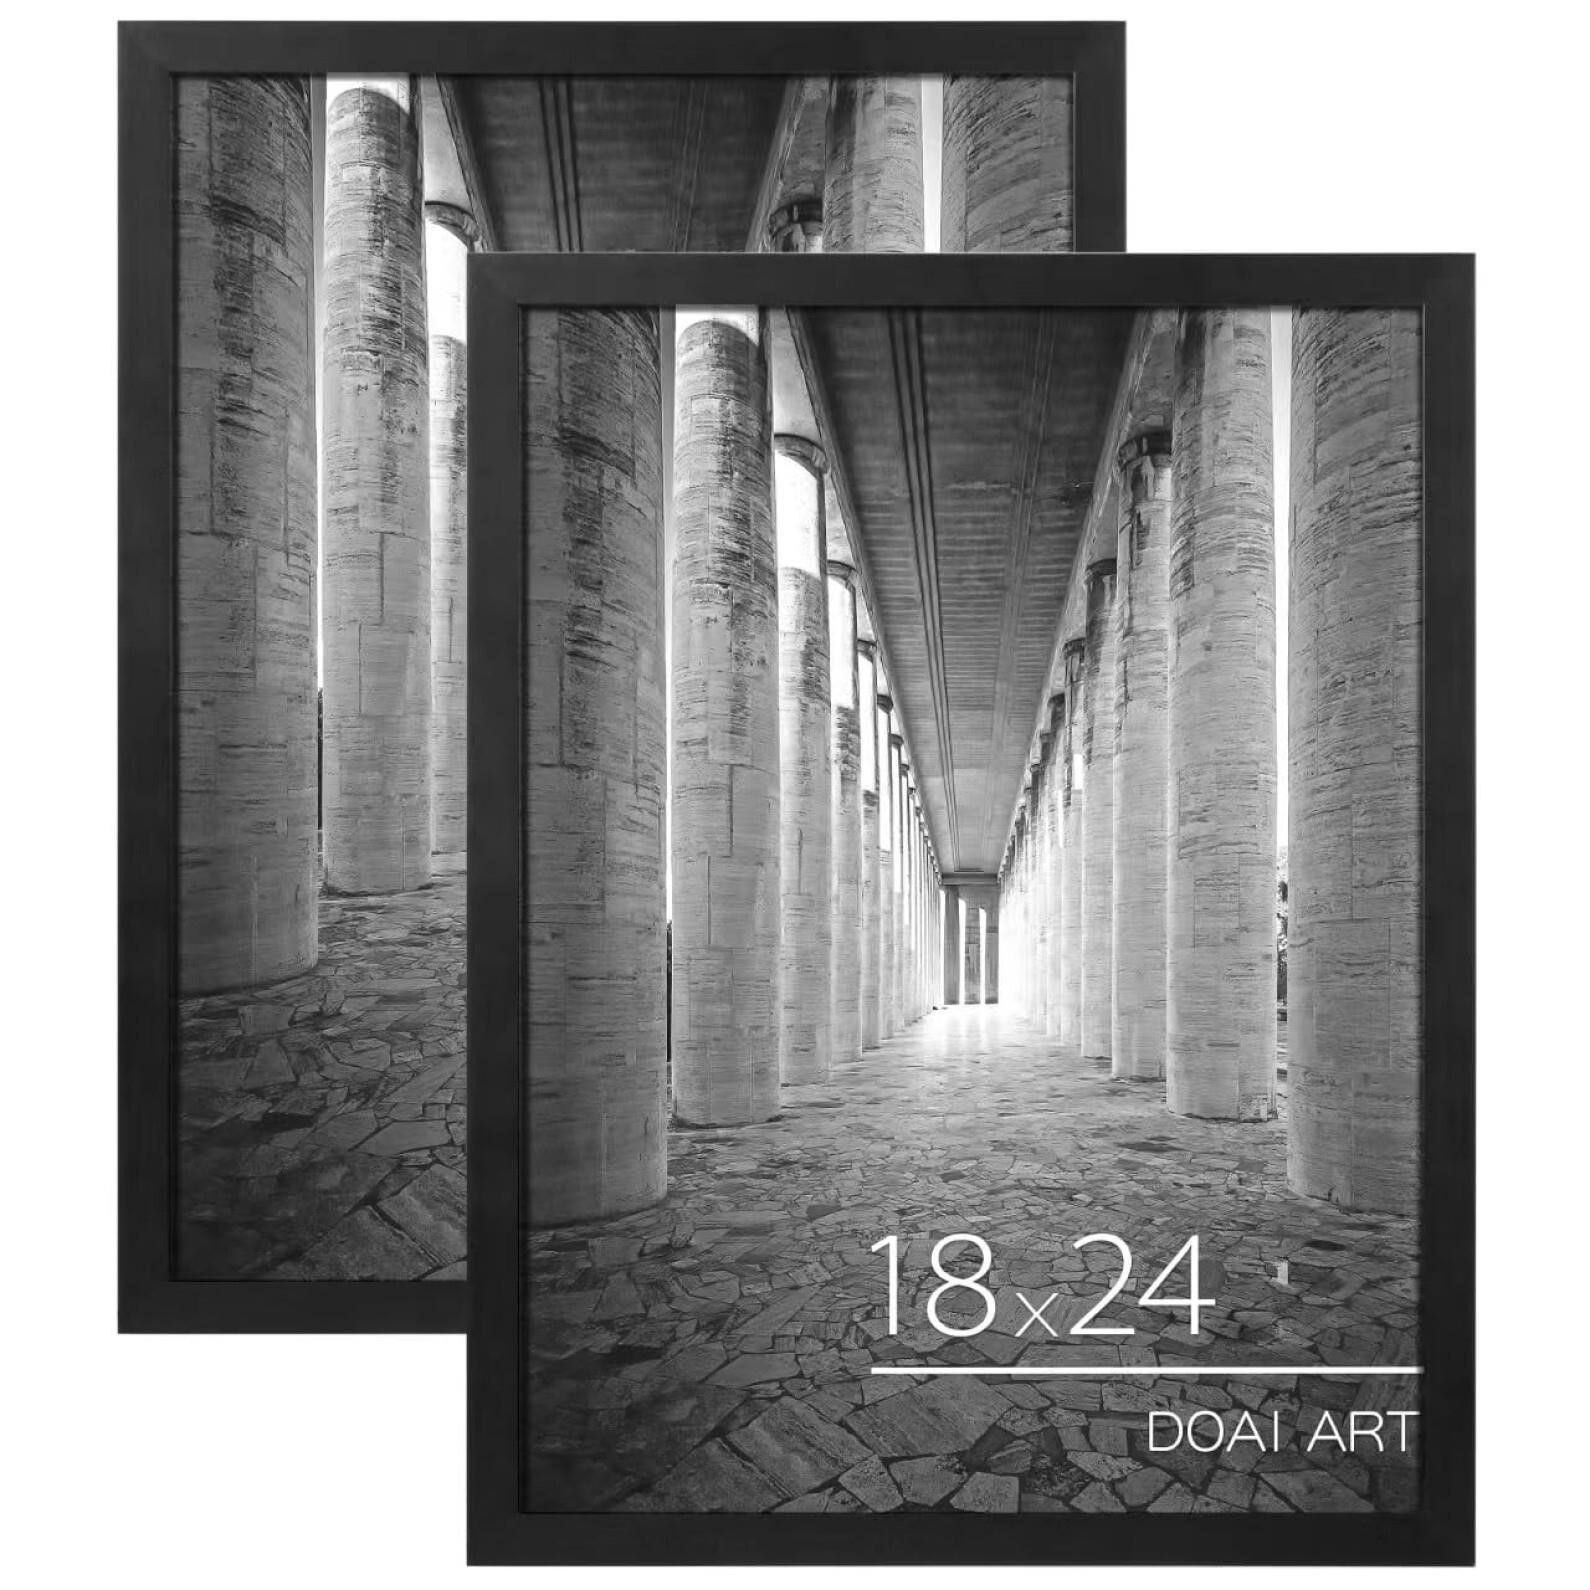 DOAI ART 18x24 Poster Frame 2 Pack, Black 18 x 24